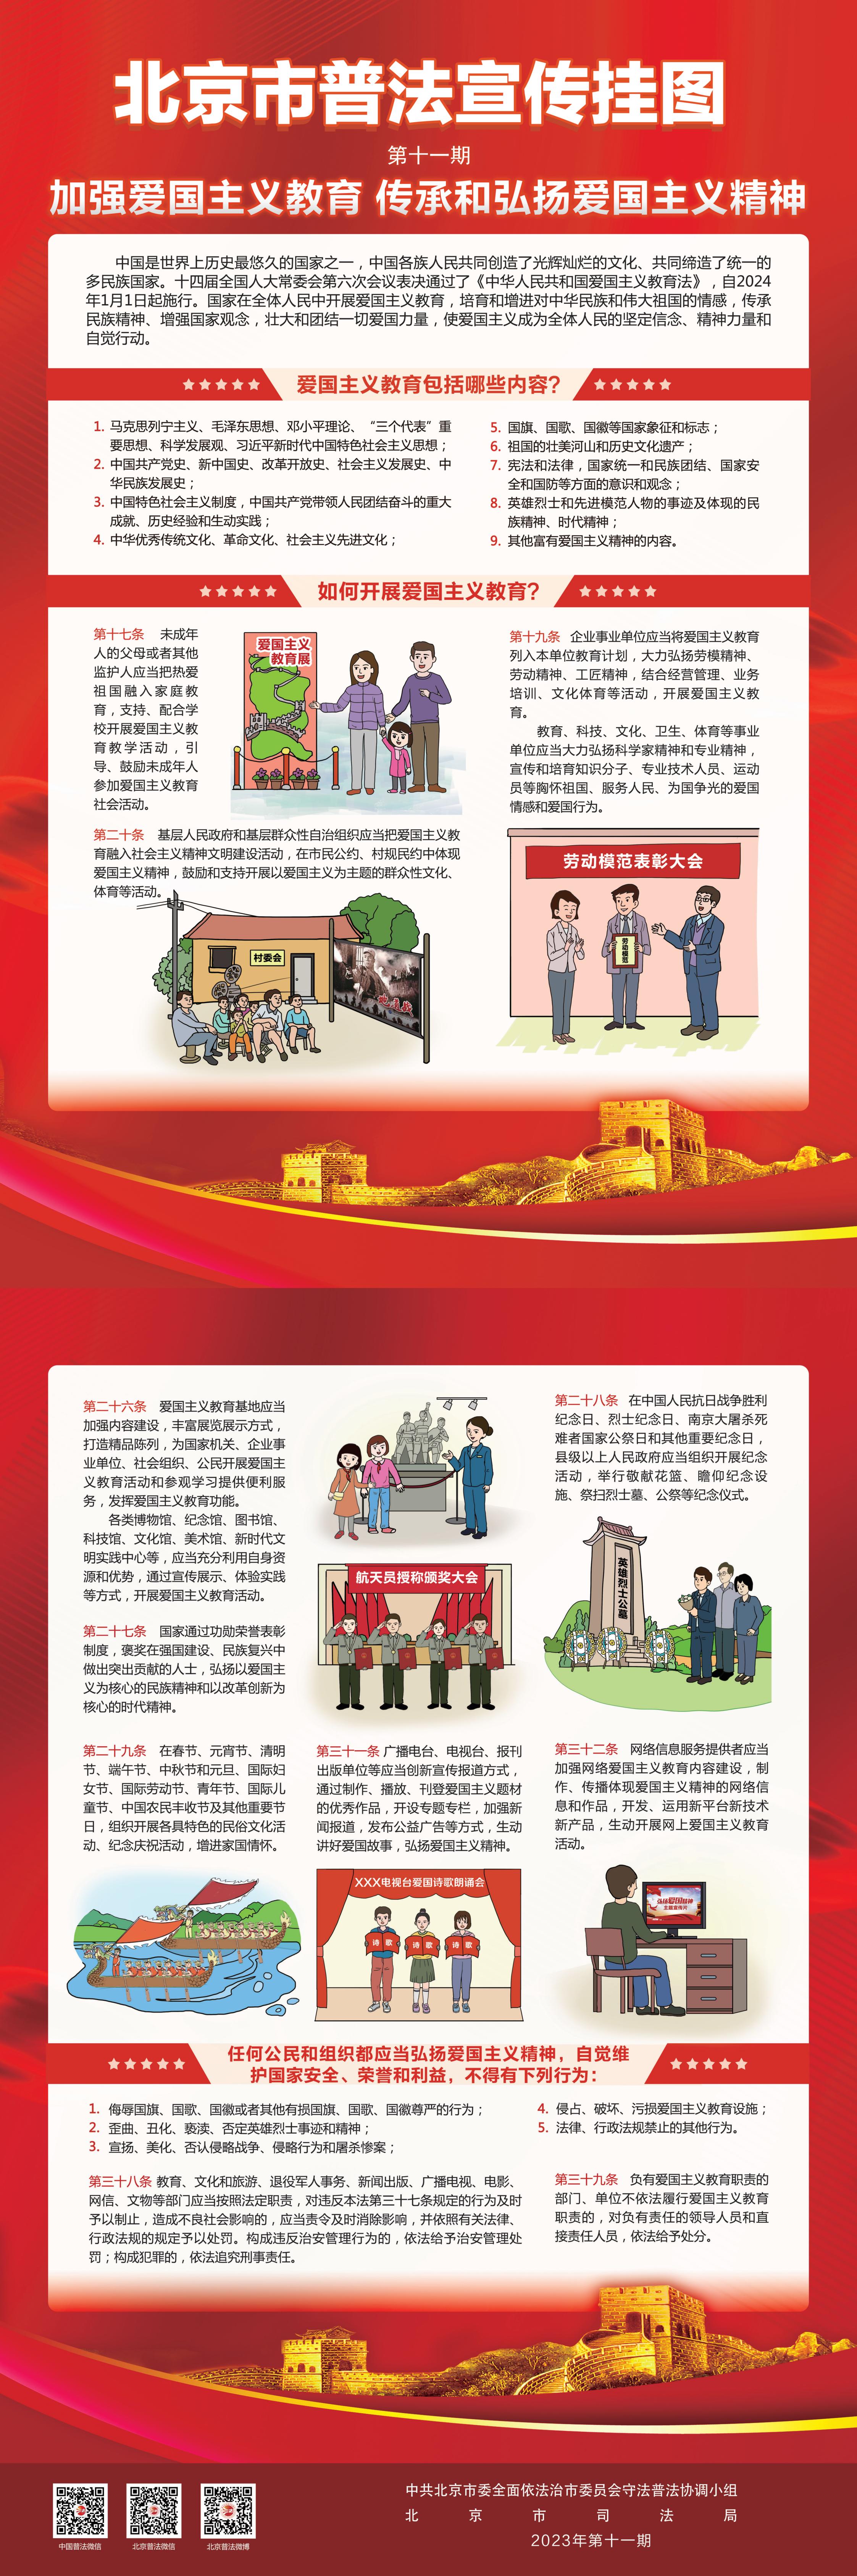 北京市普法宣传挂图第十一期